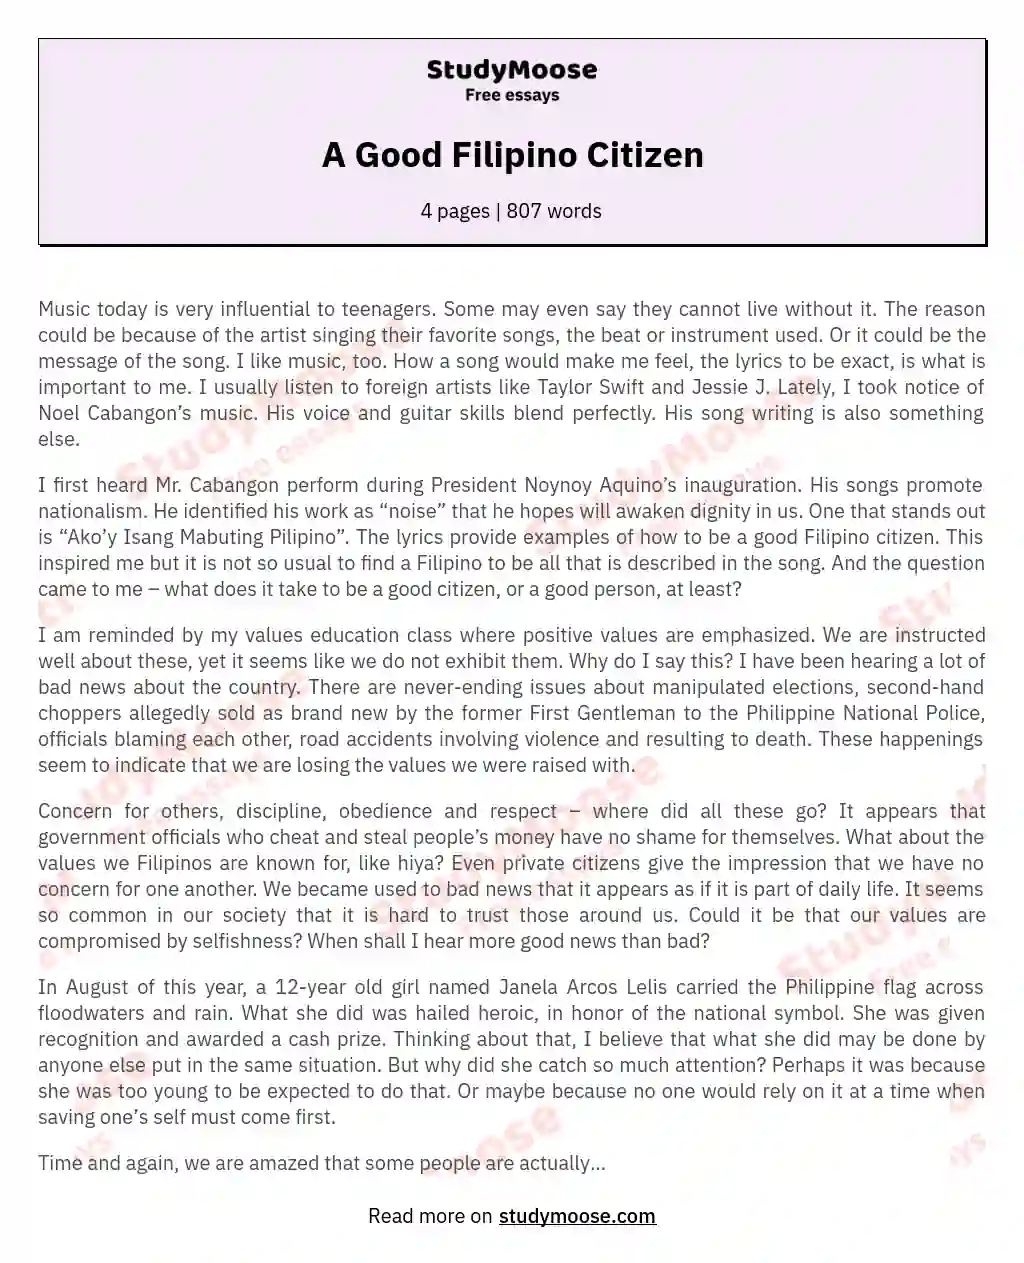 A Good Filipino Citizen essay